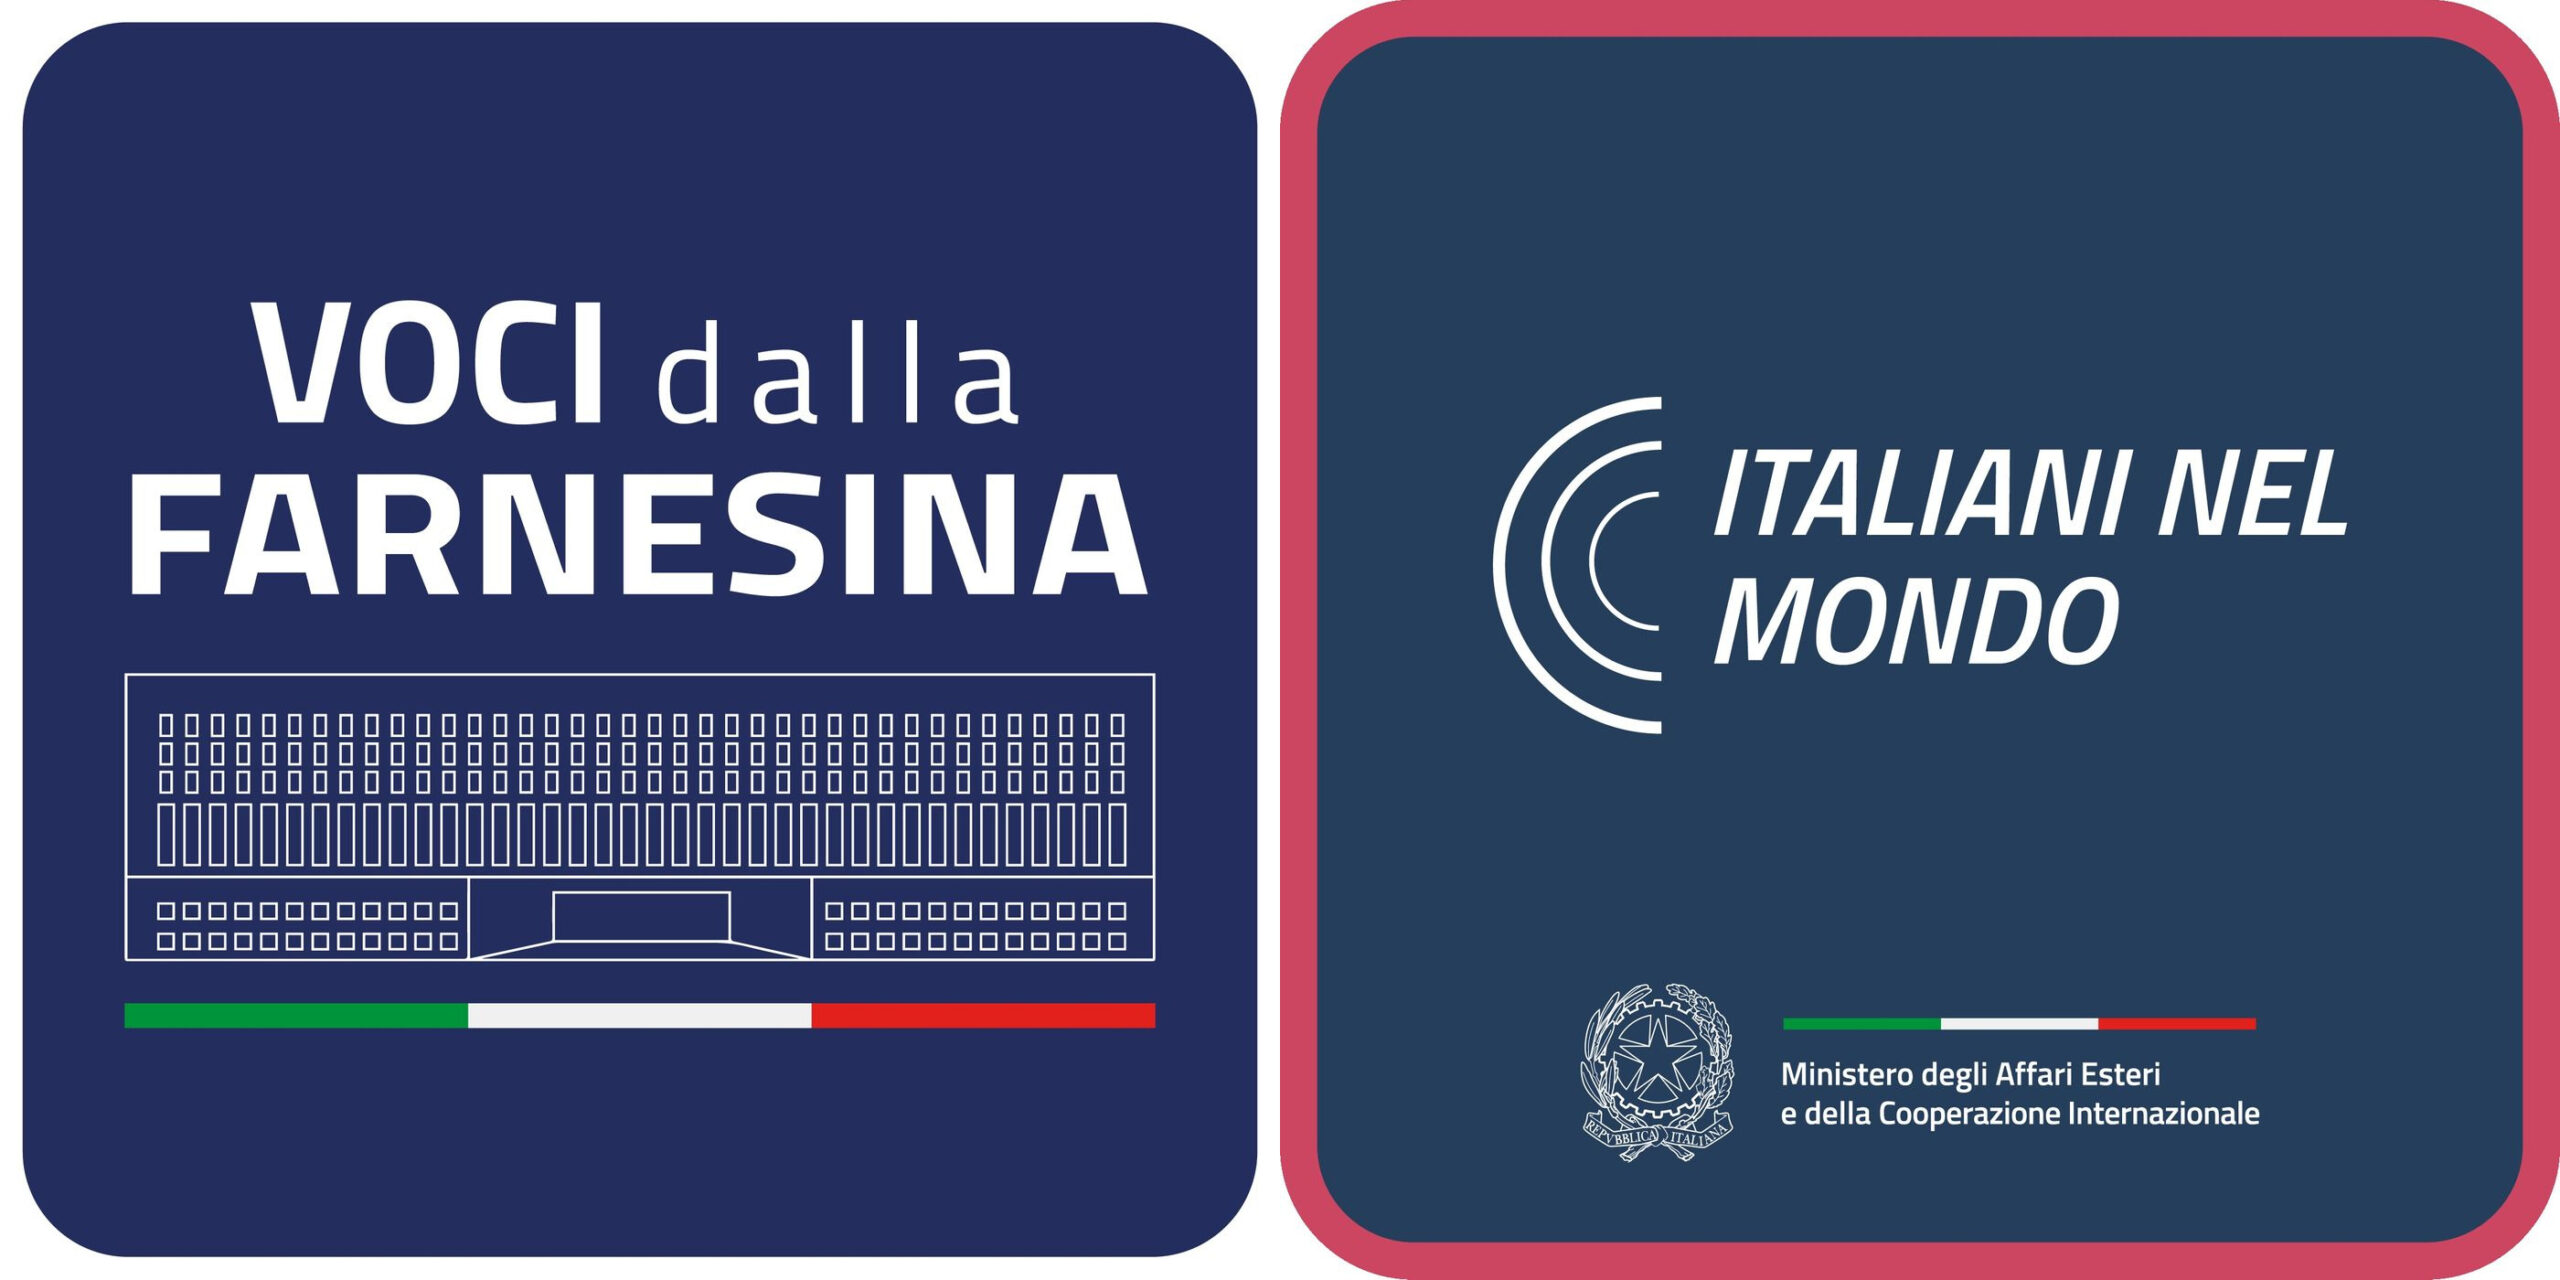 Razpad med logotipoma "Voci della Farnesina" in "Italiani nel mondo"